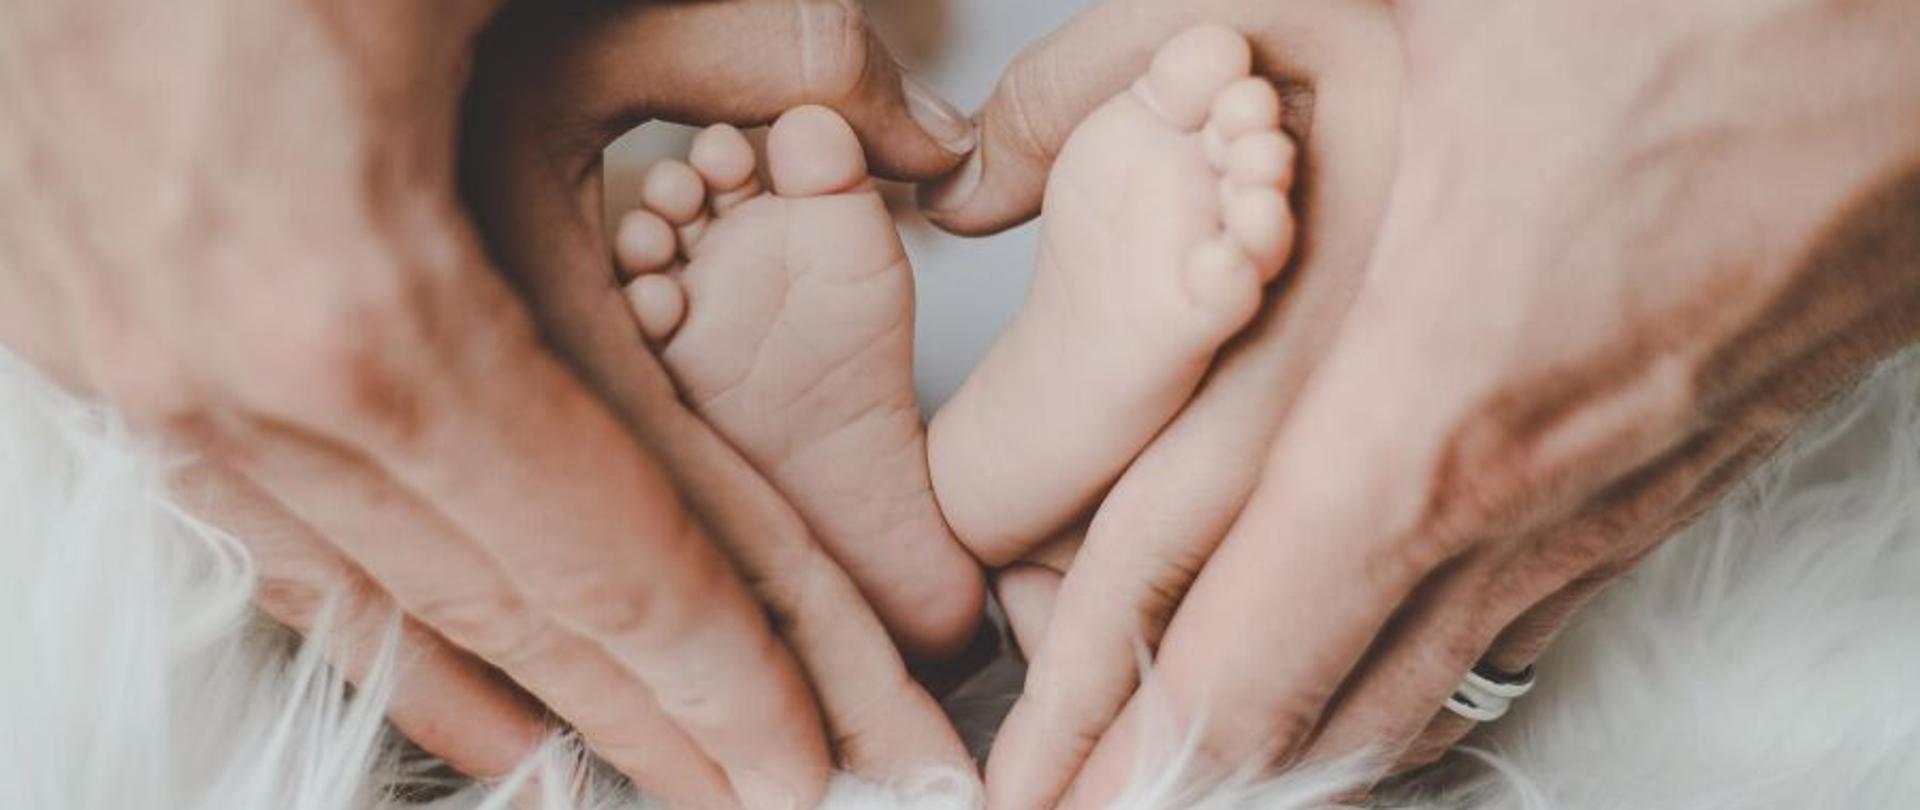 Na zdjęciu widać dwie pary dłoni rodziców obejmujące gołe stópki noworodka. Dłonie są ułożone na kształt serca, a stópki dziecka są pośrodku.